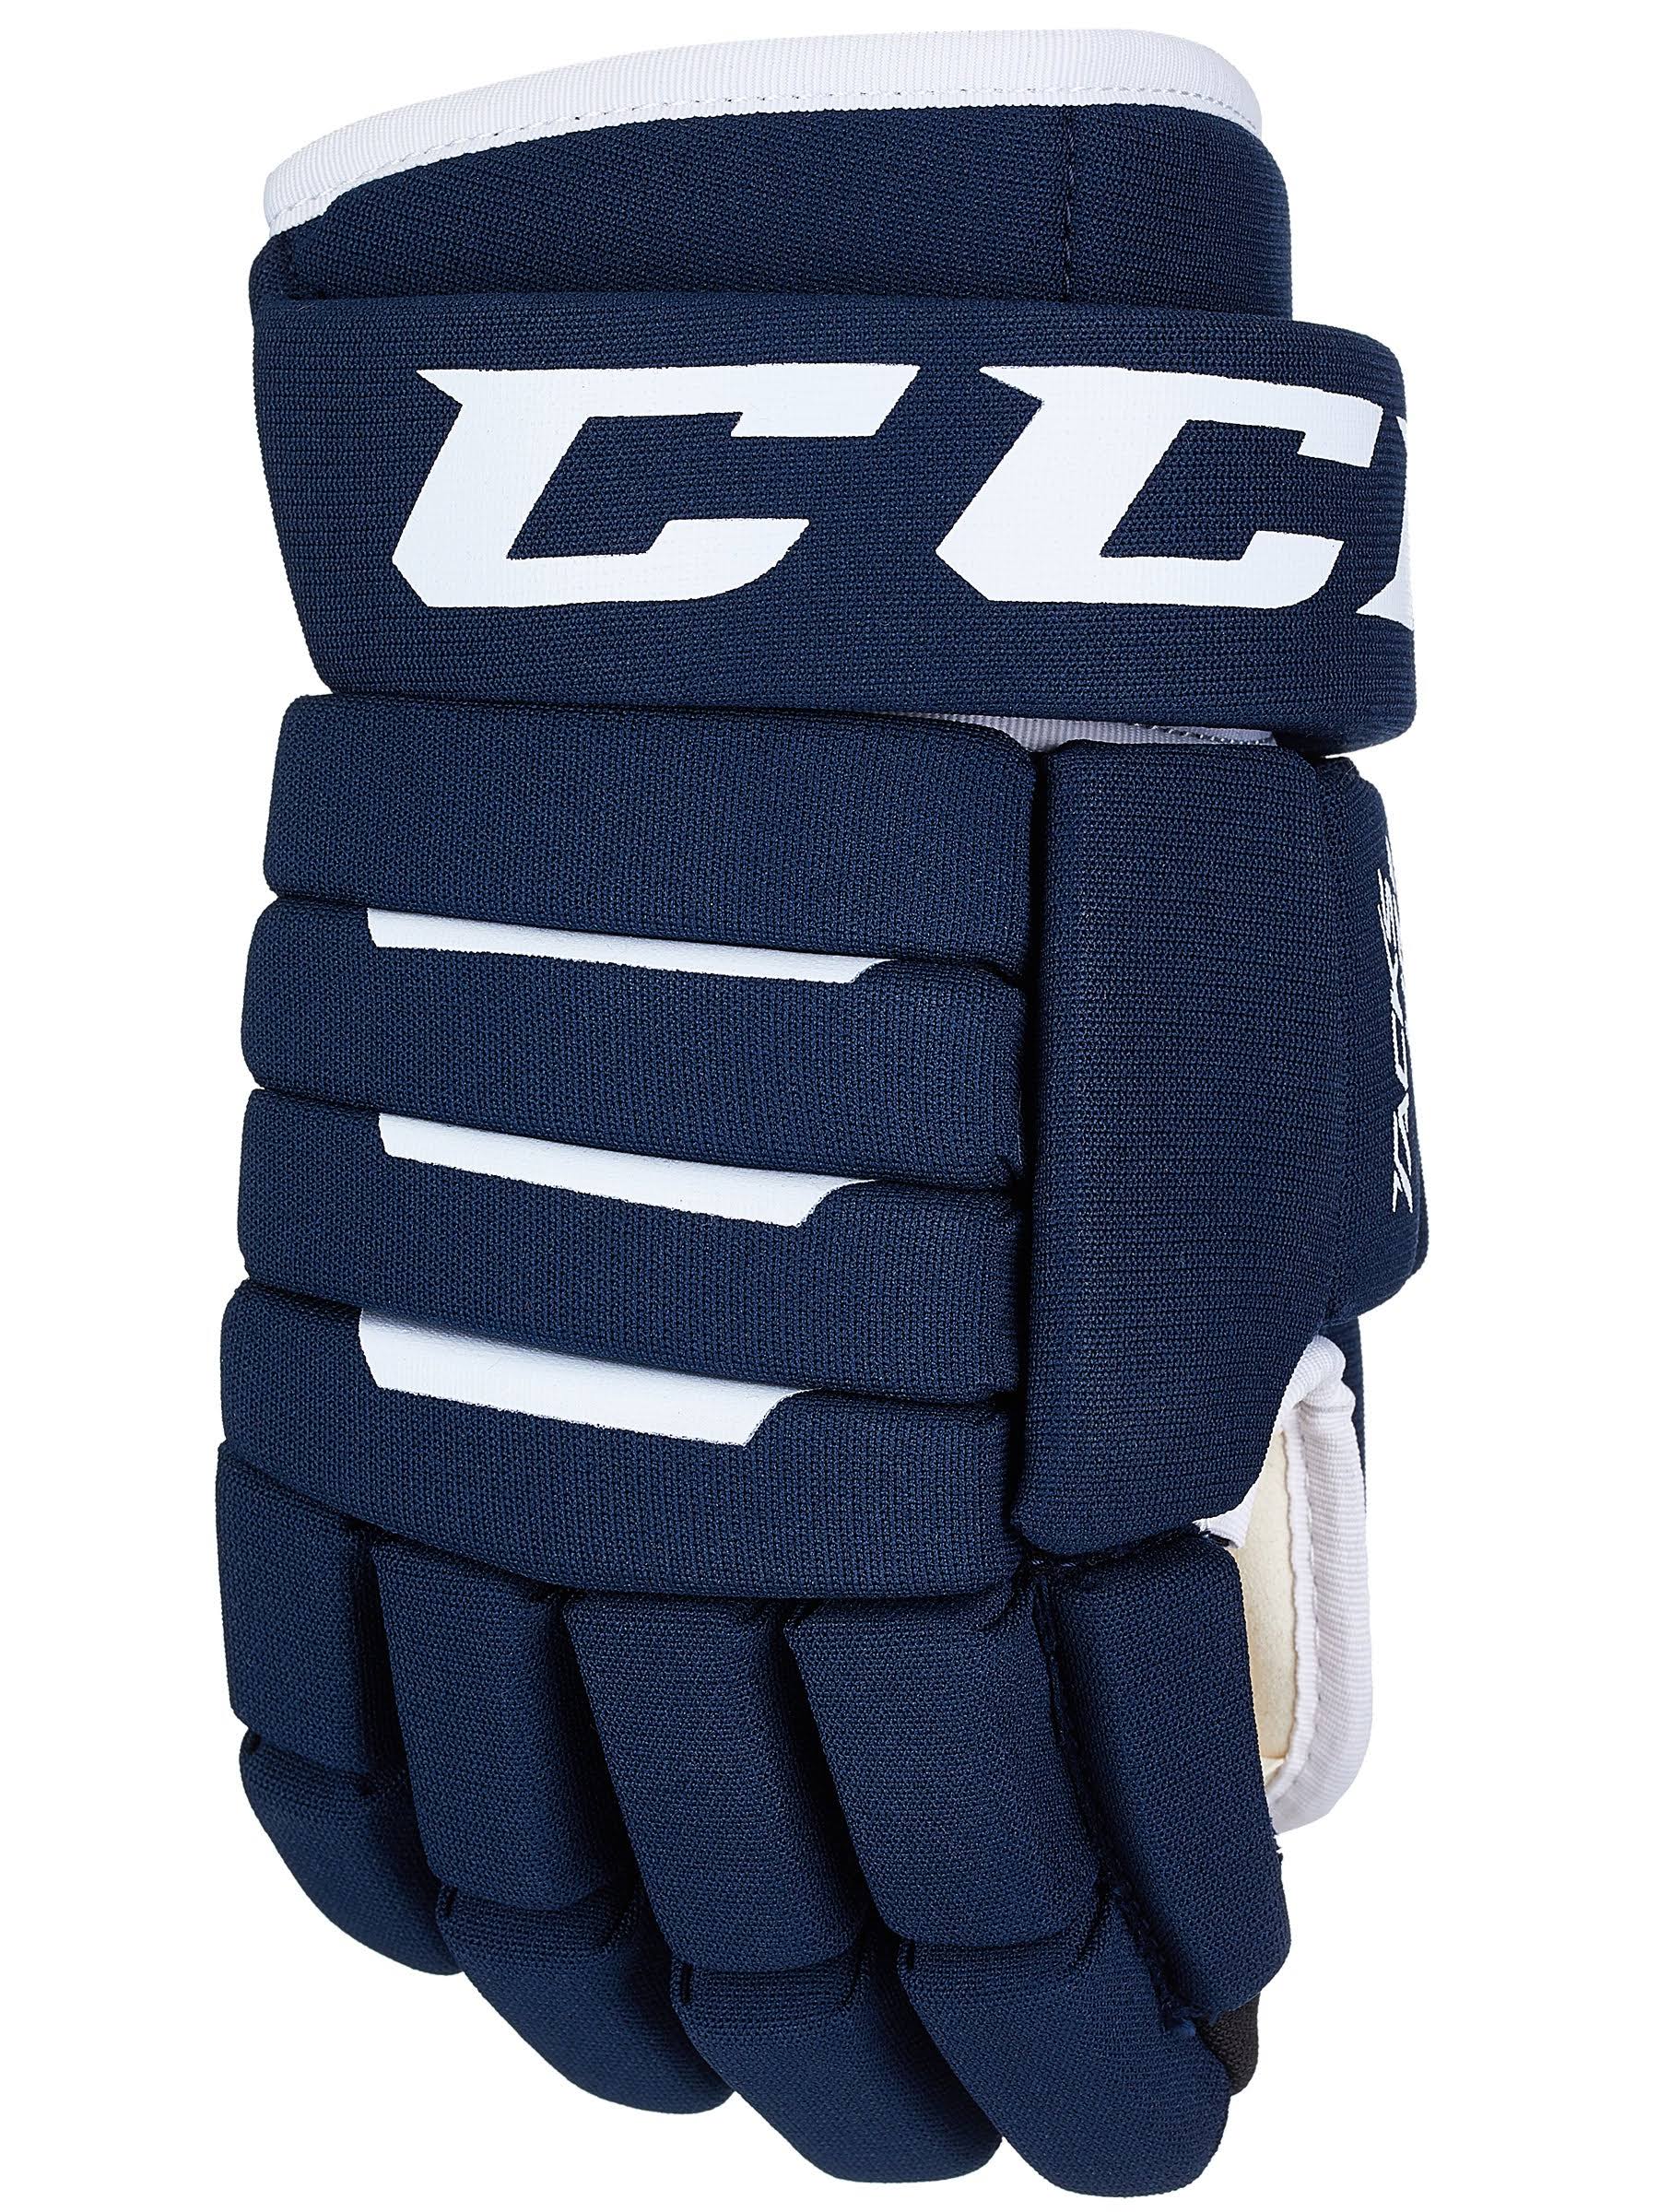 CCM Tacks 4R 2 Senior Hockey Gloves - Navy/Navy - 15"